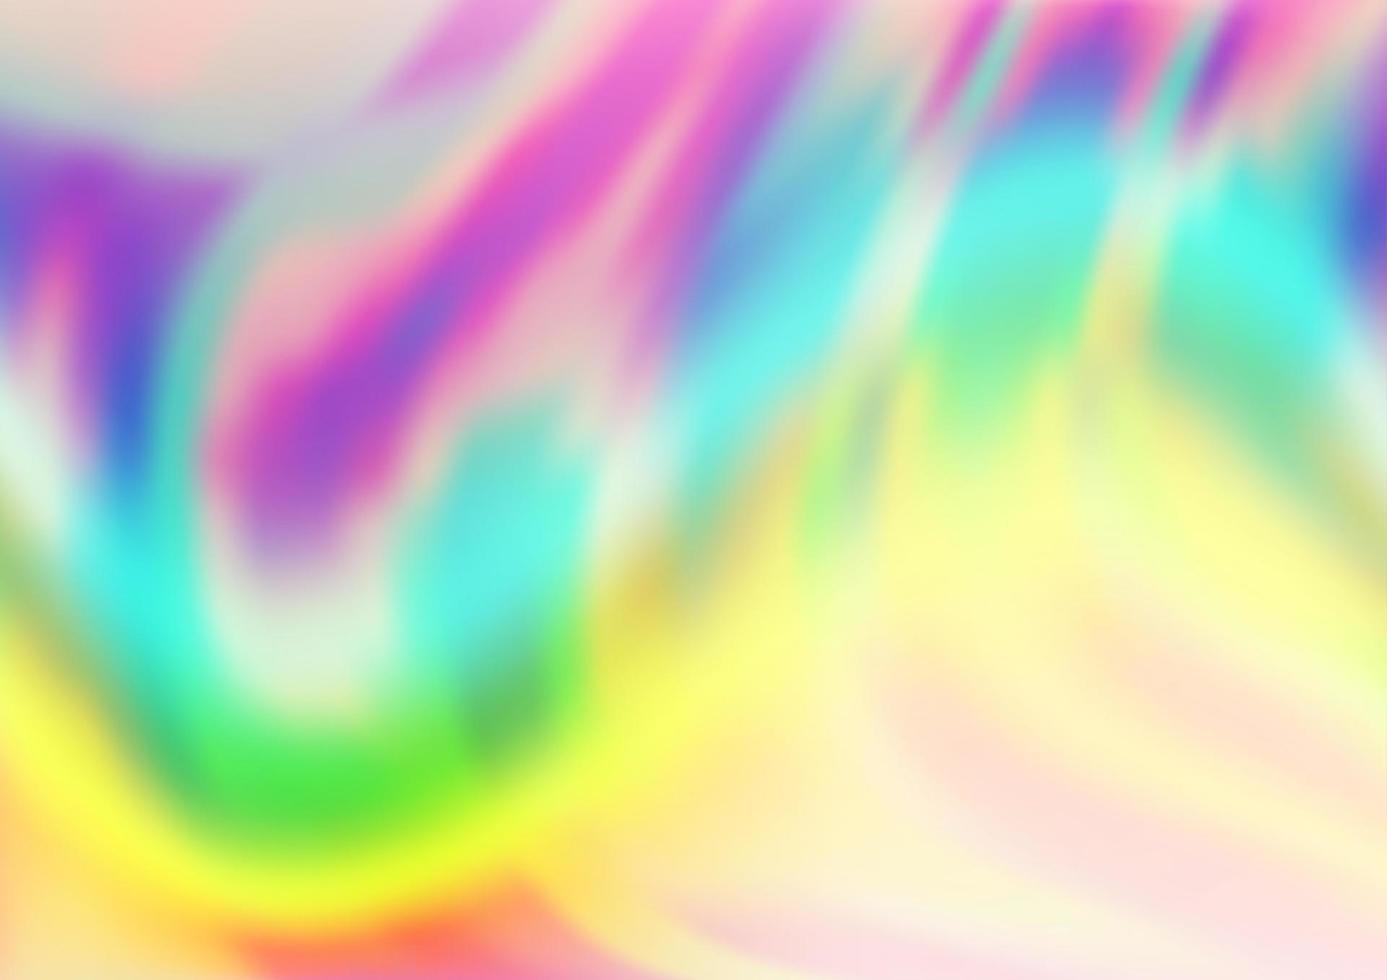 ljus mångfärgad, regnbåge vektor mall med abstrakta linjer.